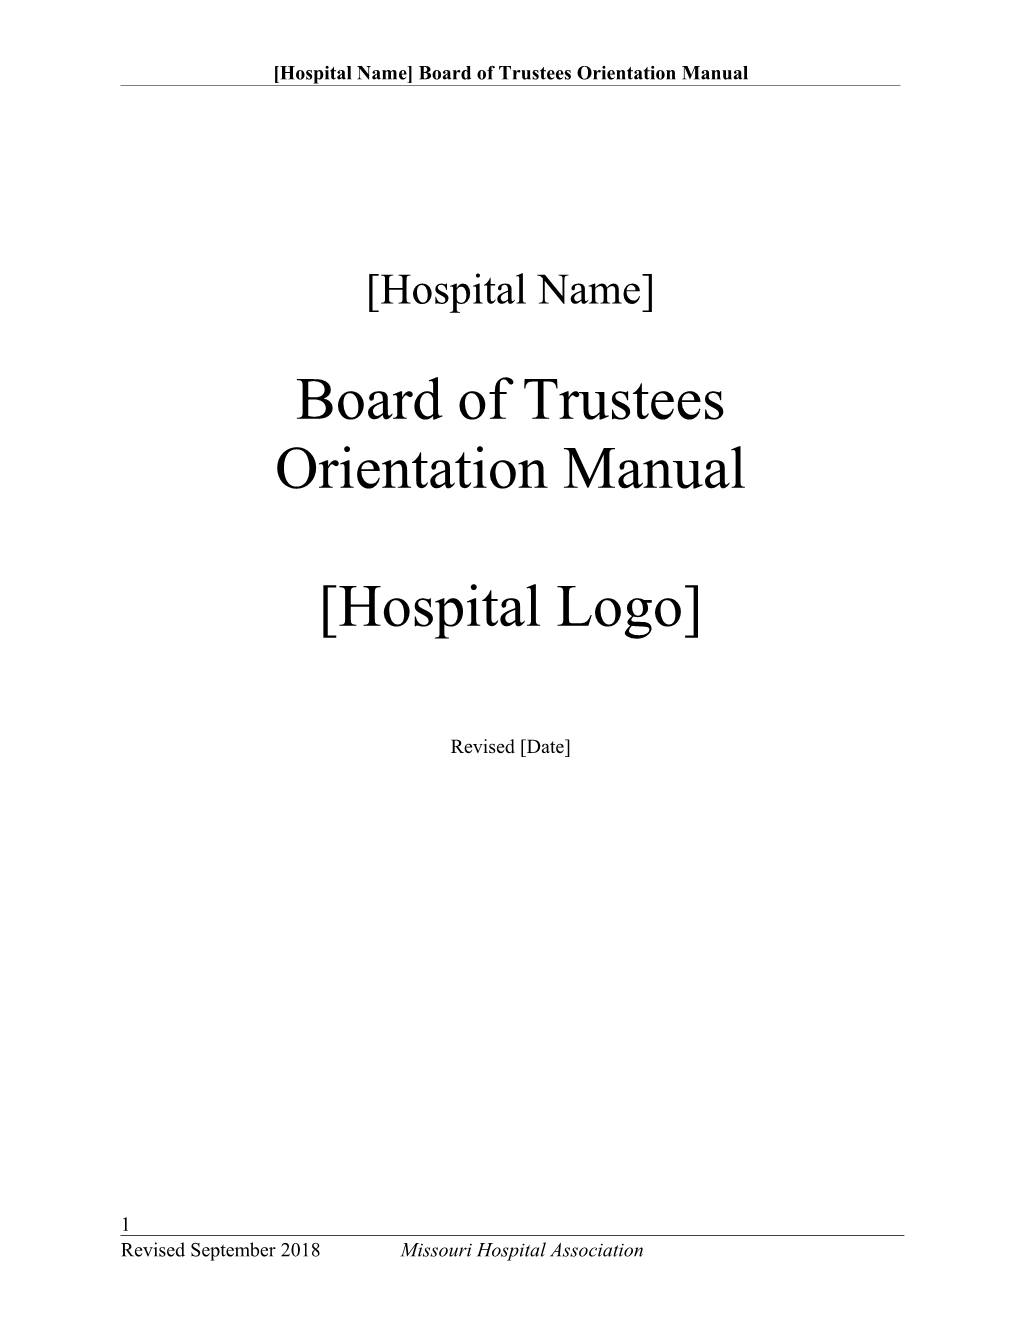 Trustee Orientation Manual